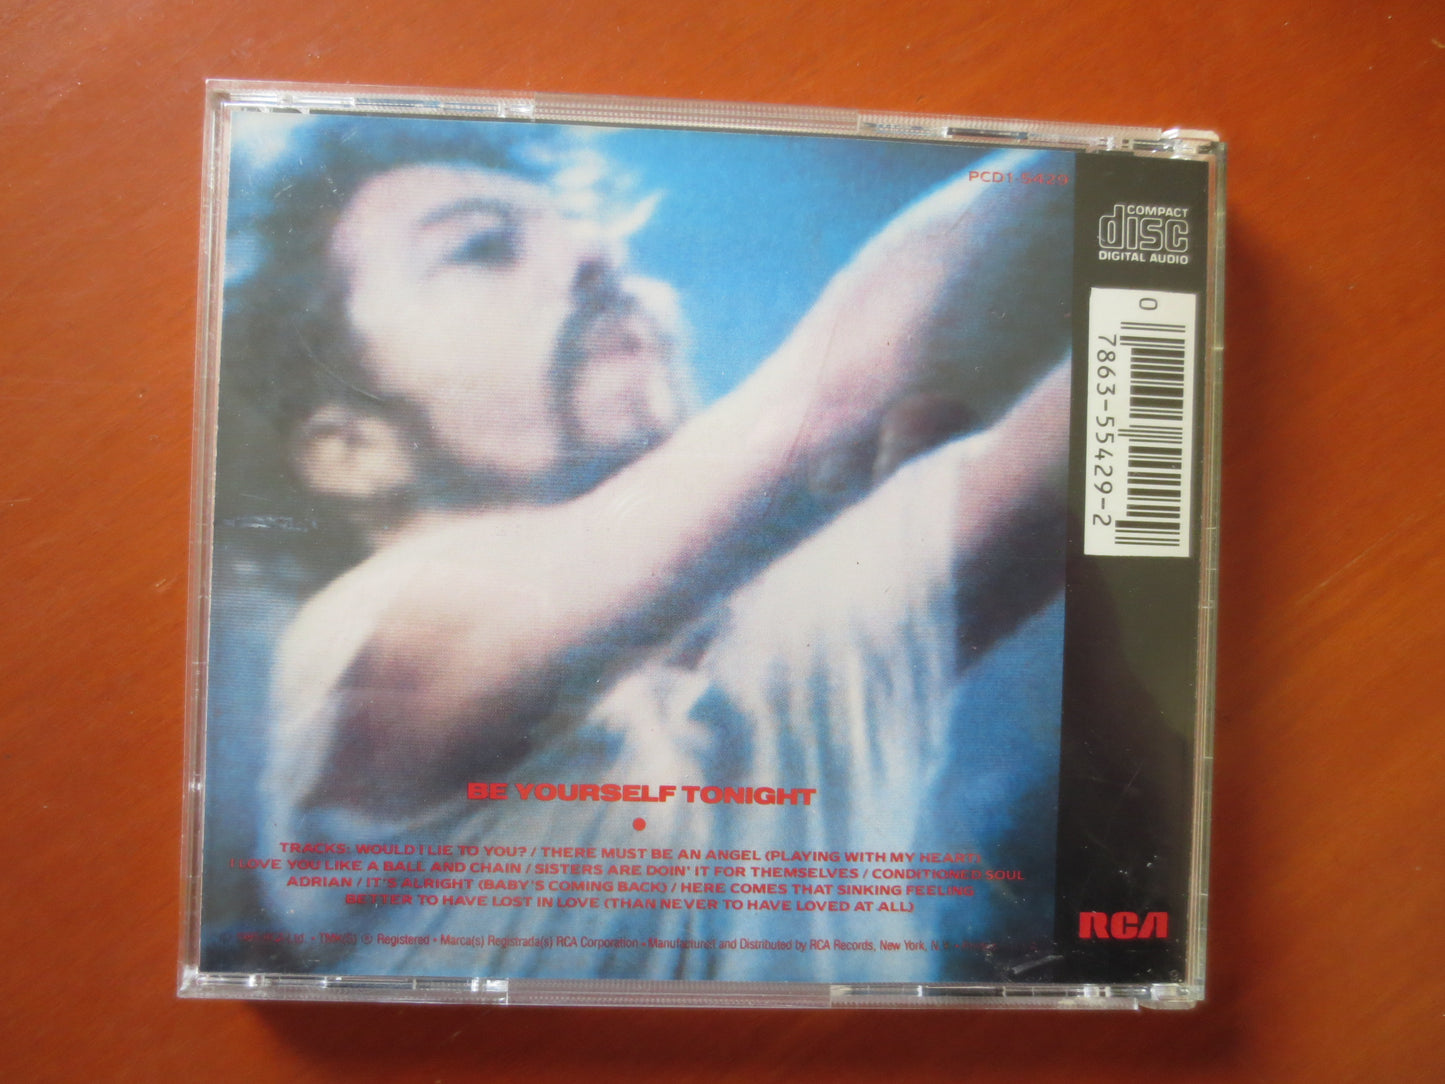 EURYTHMICS, Be YOURSELF Tonight, EURYTHMICS Cd, Rock Compact Disc, Eurythmics Lp, Rock Cd, Pop Music Cd, 1985 Compact Discs